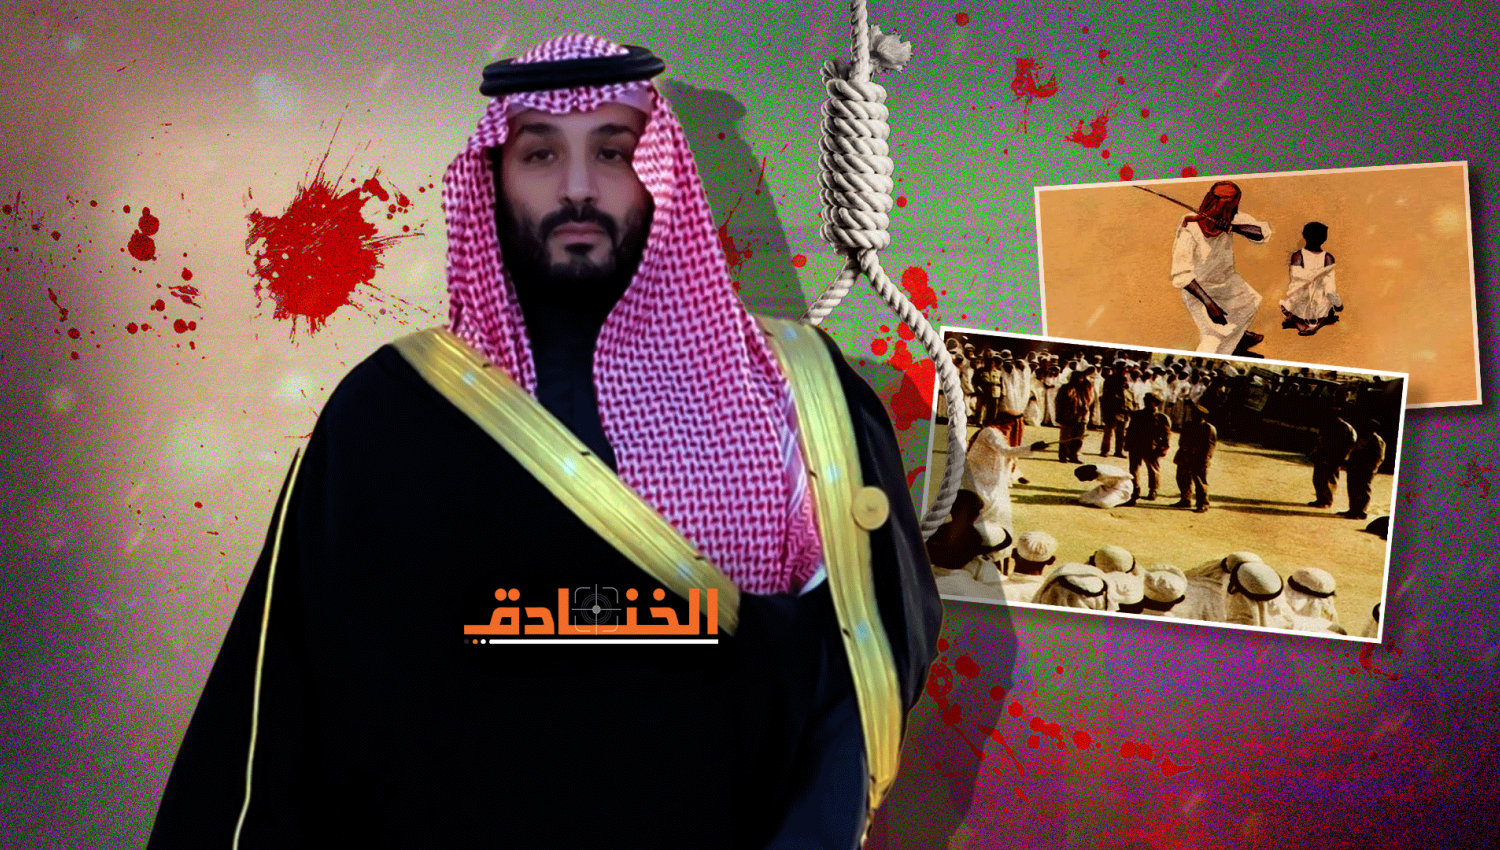 عهد بن سلمان: أكثر الأعوام دموية في تاريخ السعودية الحديث